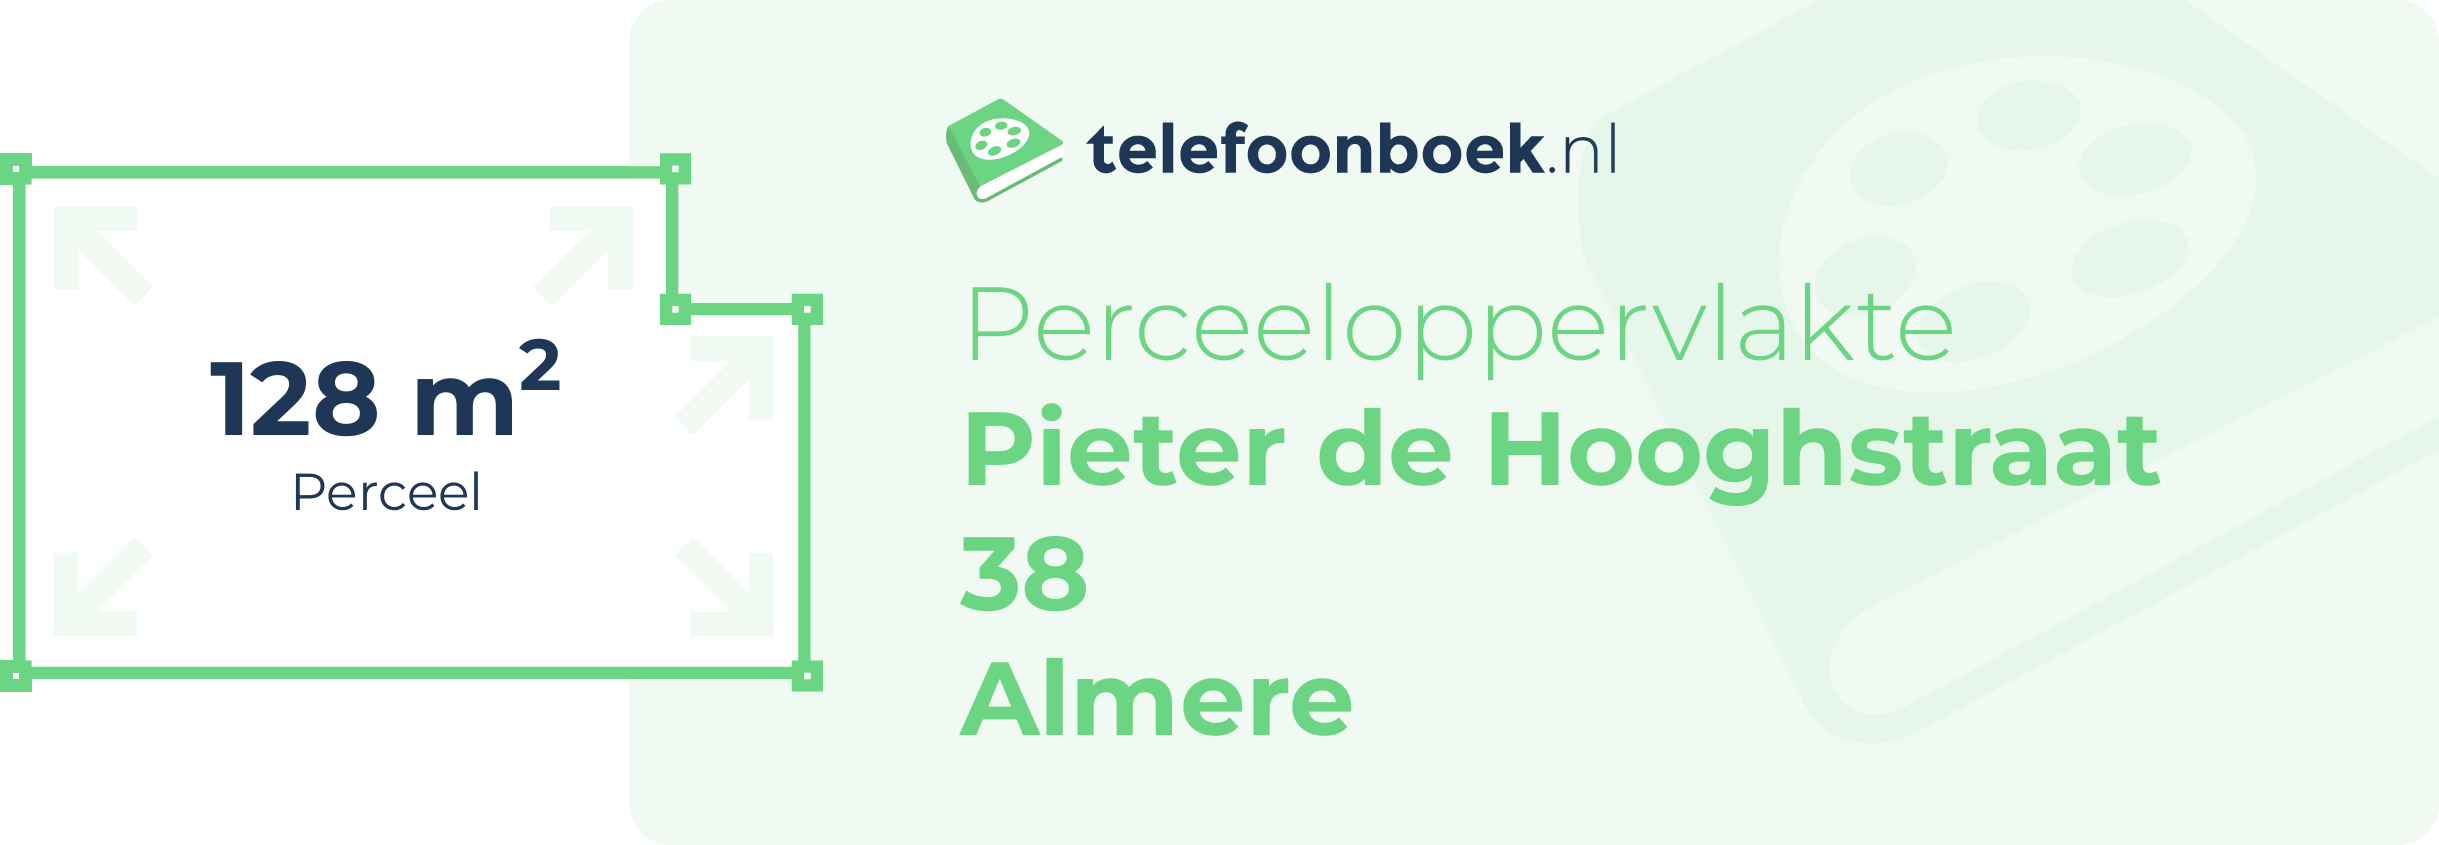 Perceeloppervlakte Pieter De Hooghstraat 38 Almere